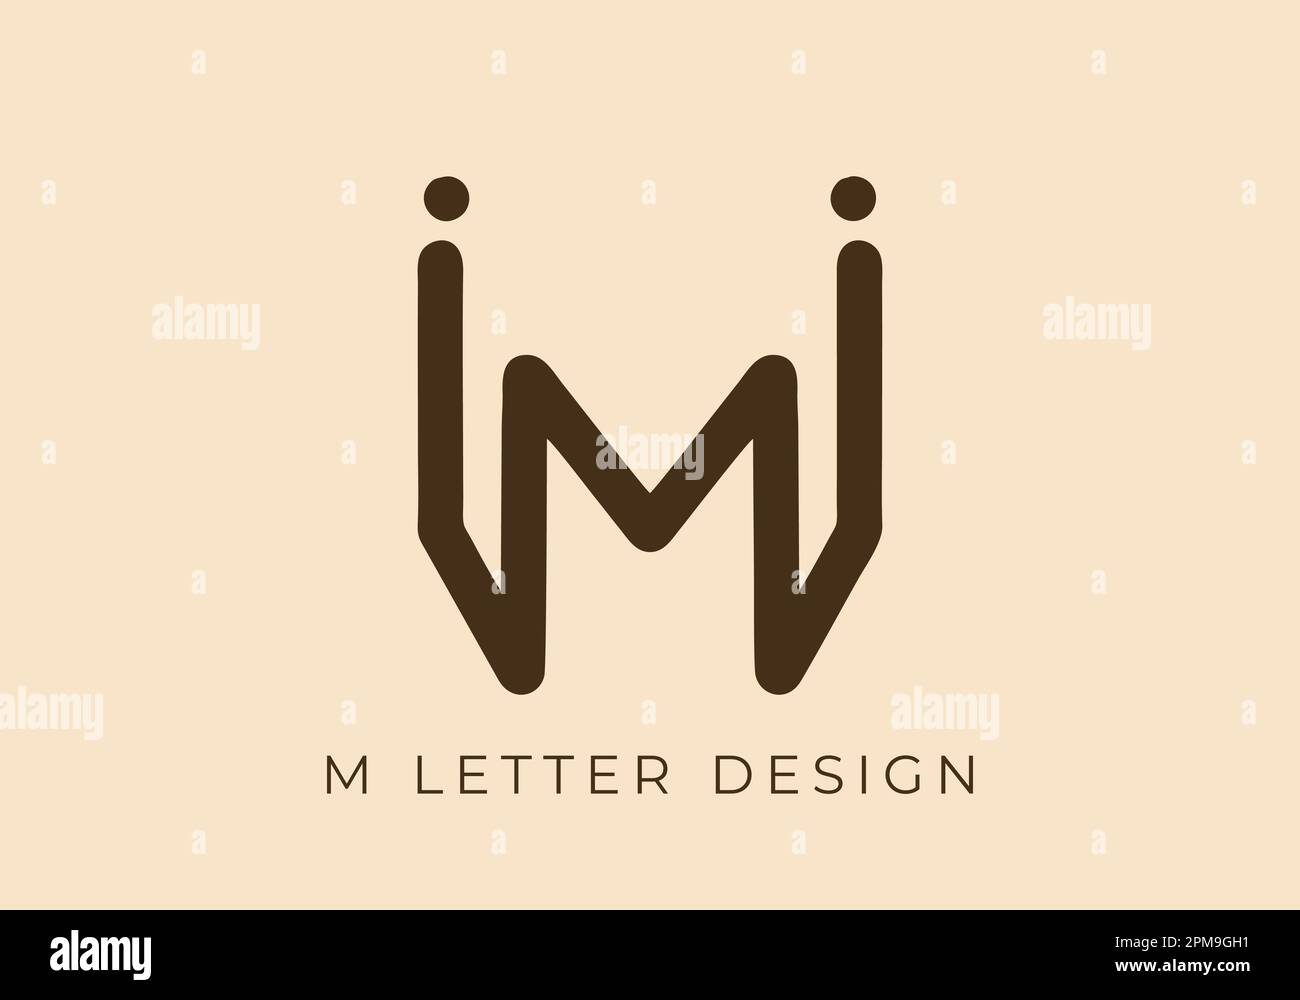 Esclusiva linea monocromatica con design monocromatico della lettera iniziale M. Illustrazione Vettoriale